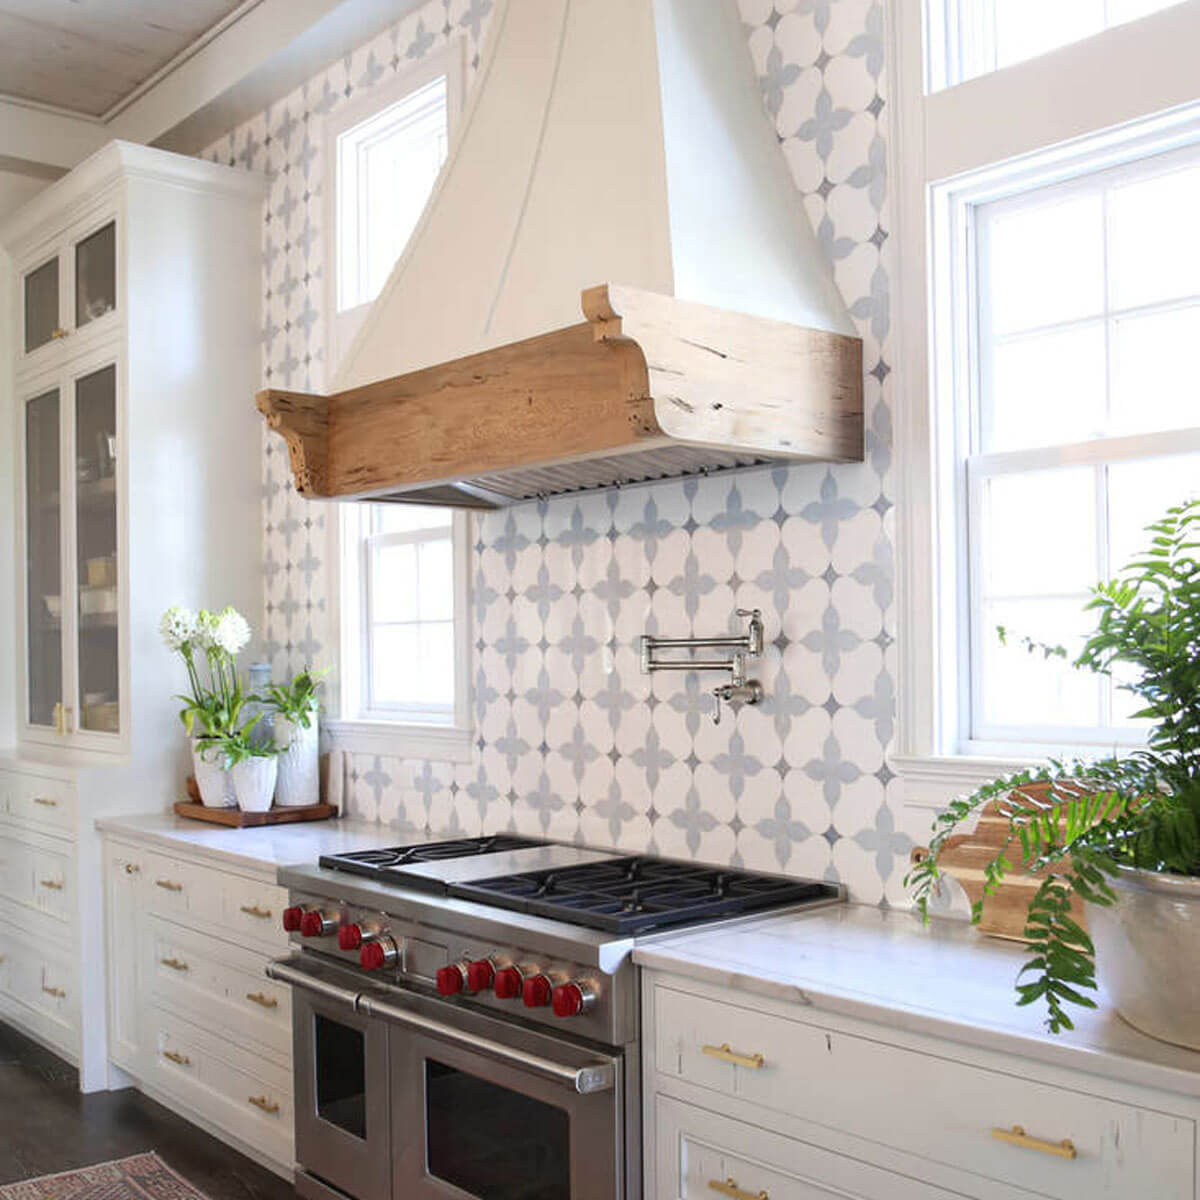  backsplash tile for kitchen ideas